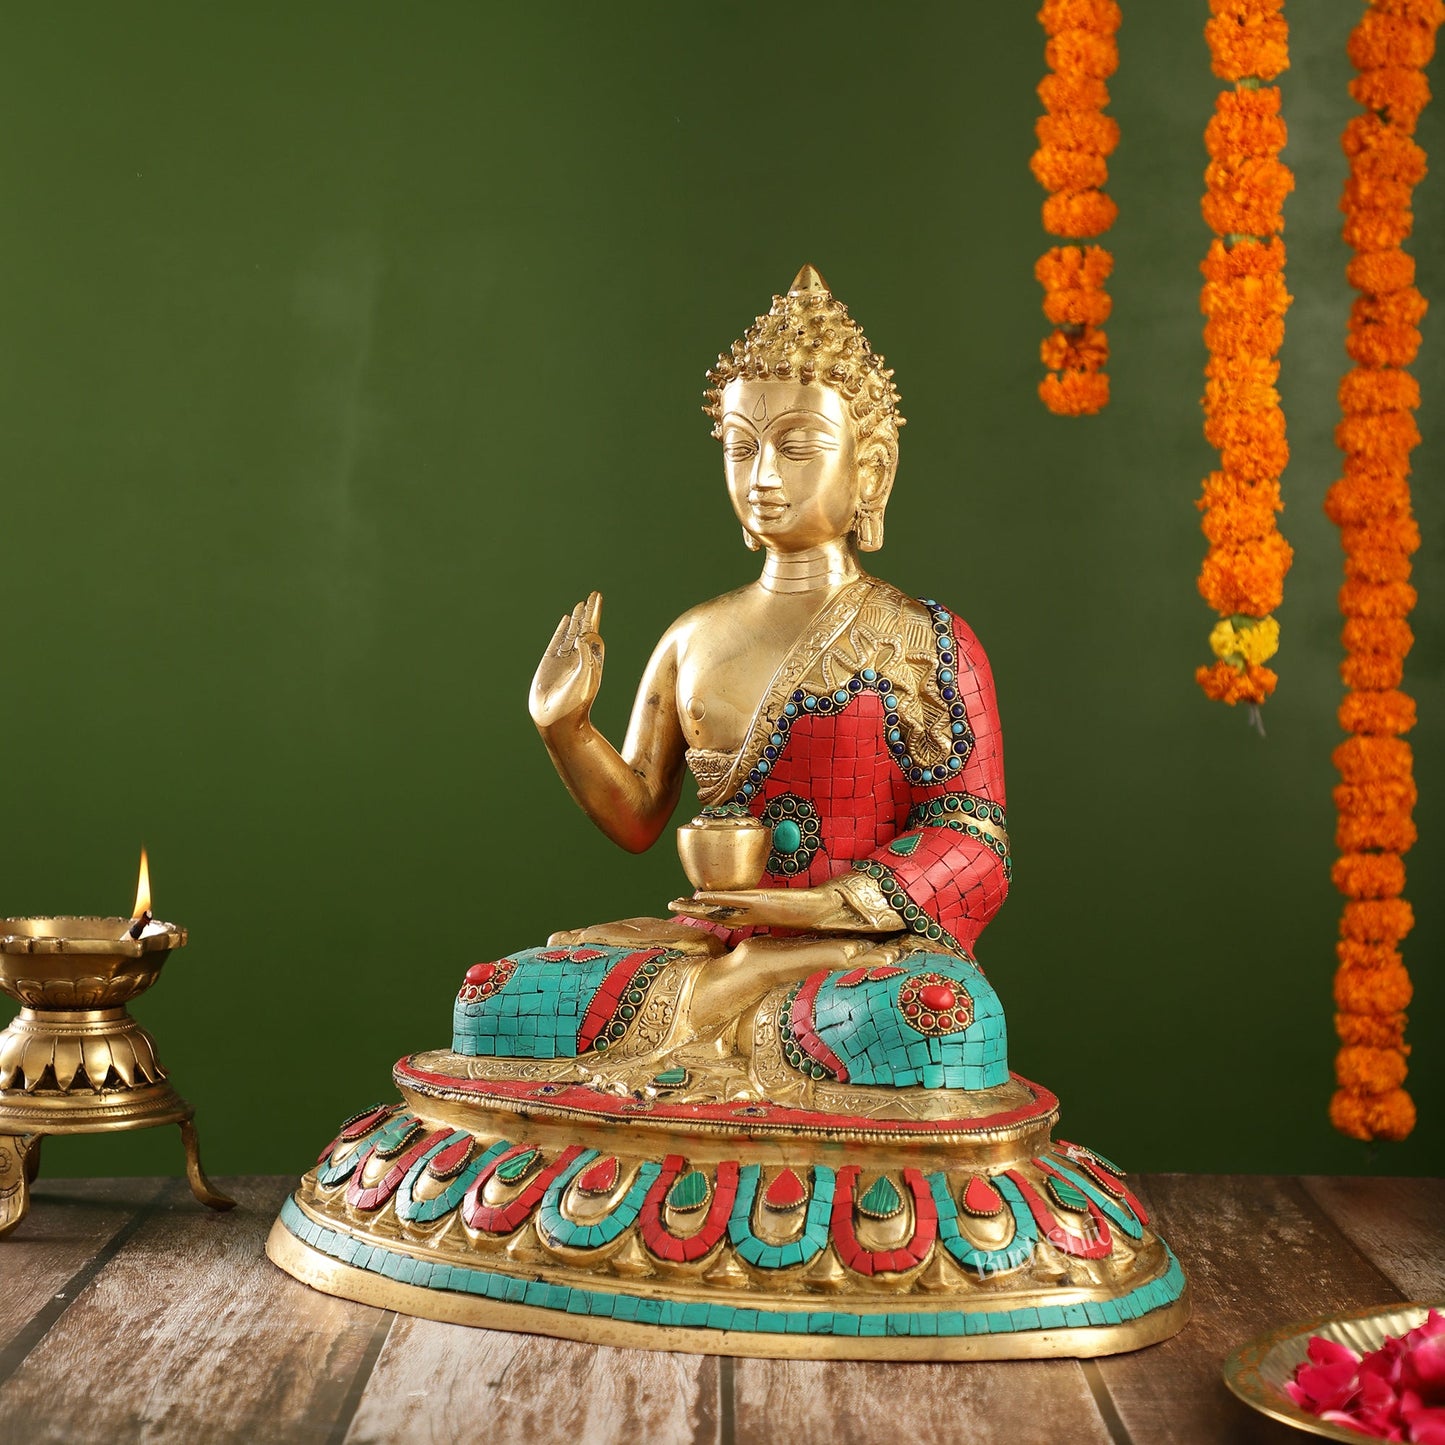 Meenakari Stonework Brass Buddha in Abhaya Mudra Idol | 16" Height | Serene Presence - Budhshiv.com